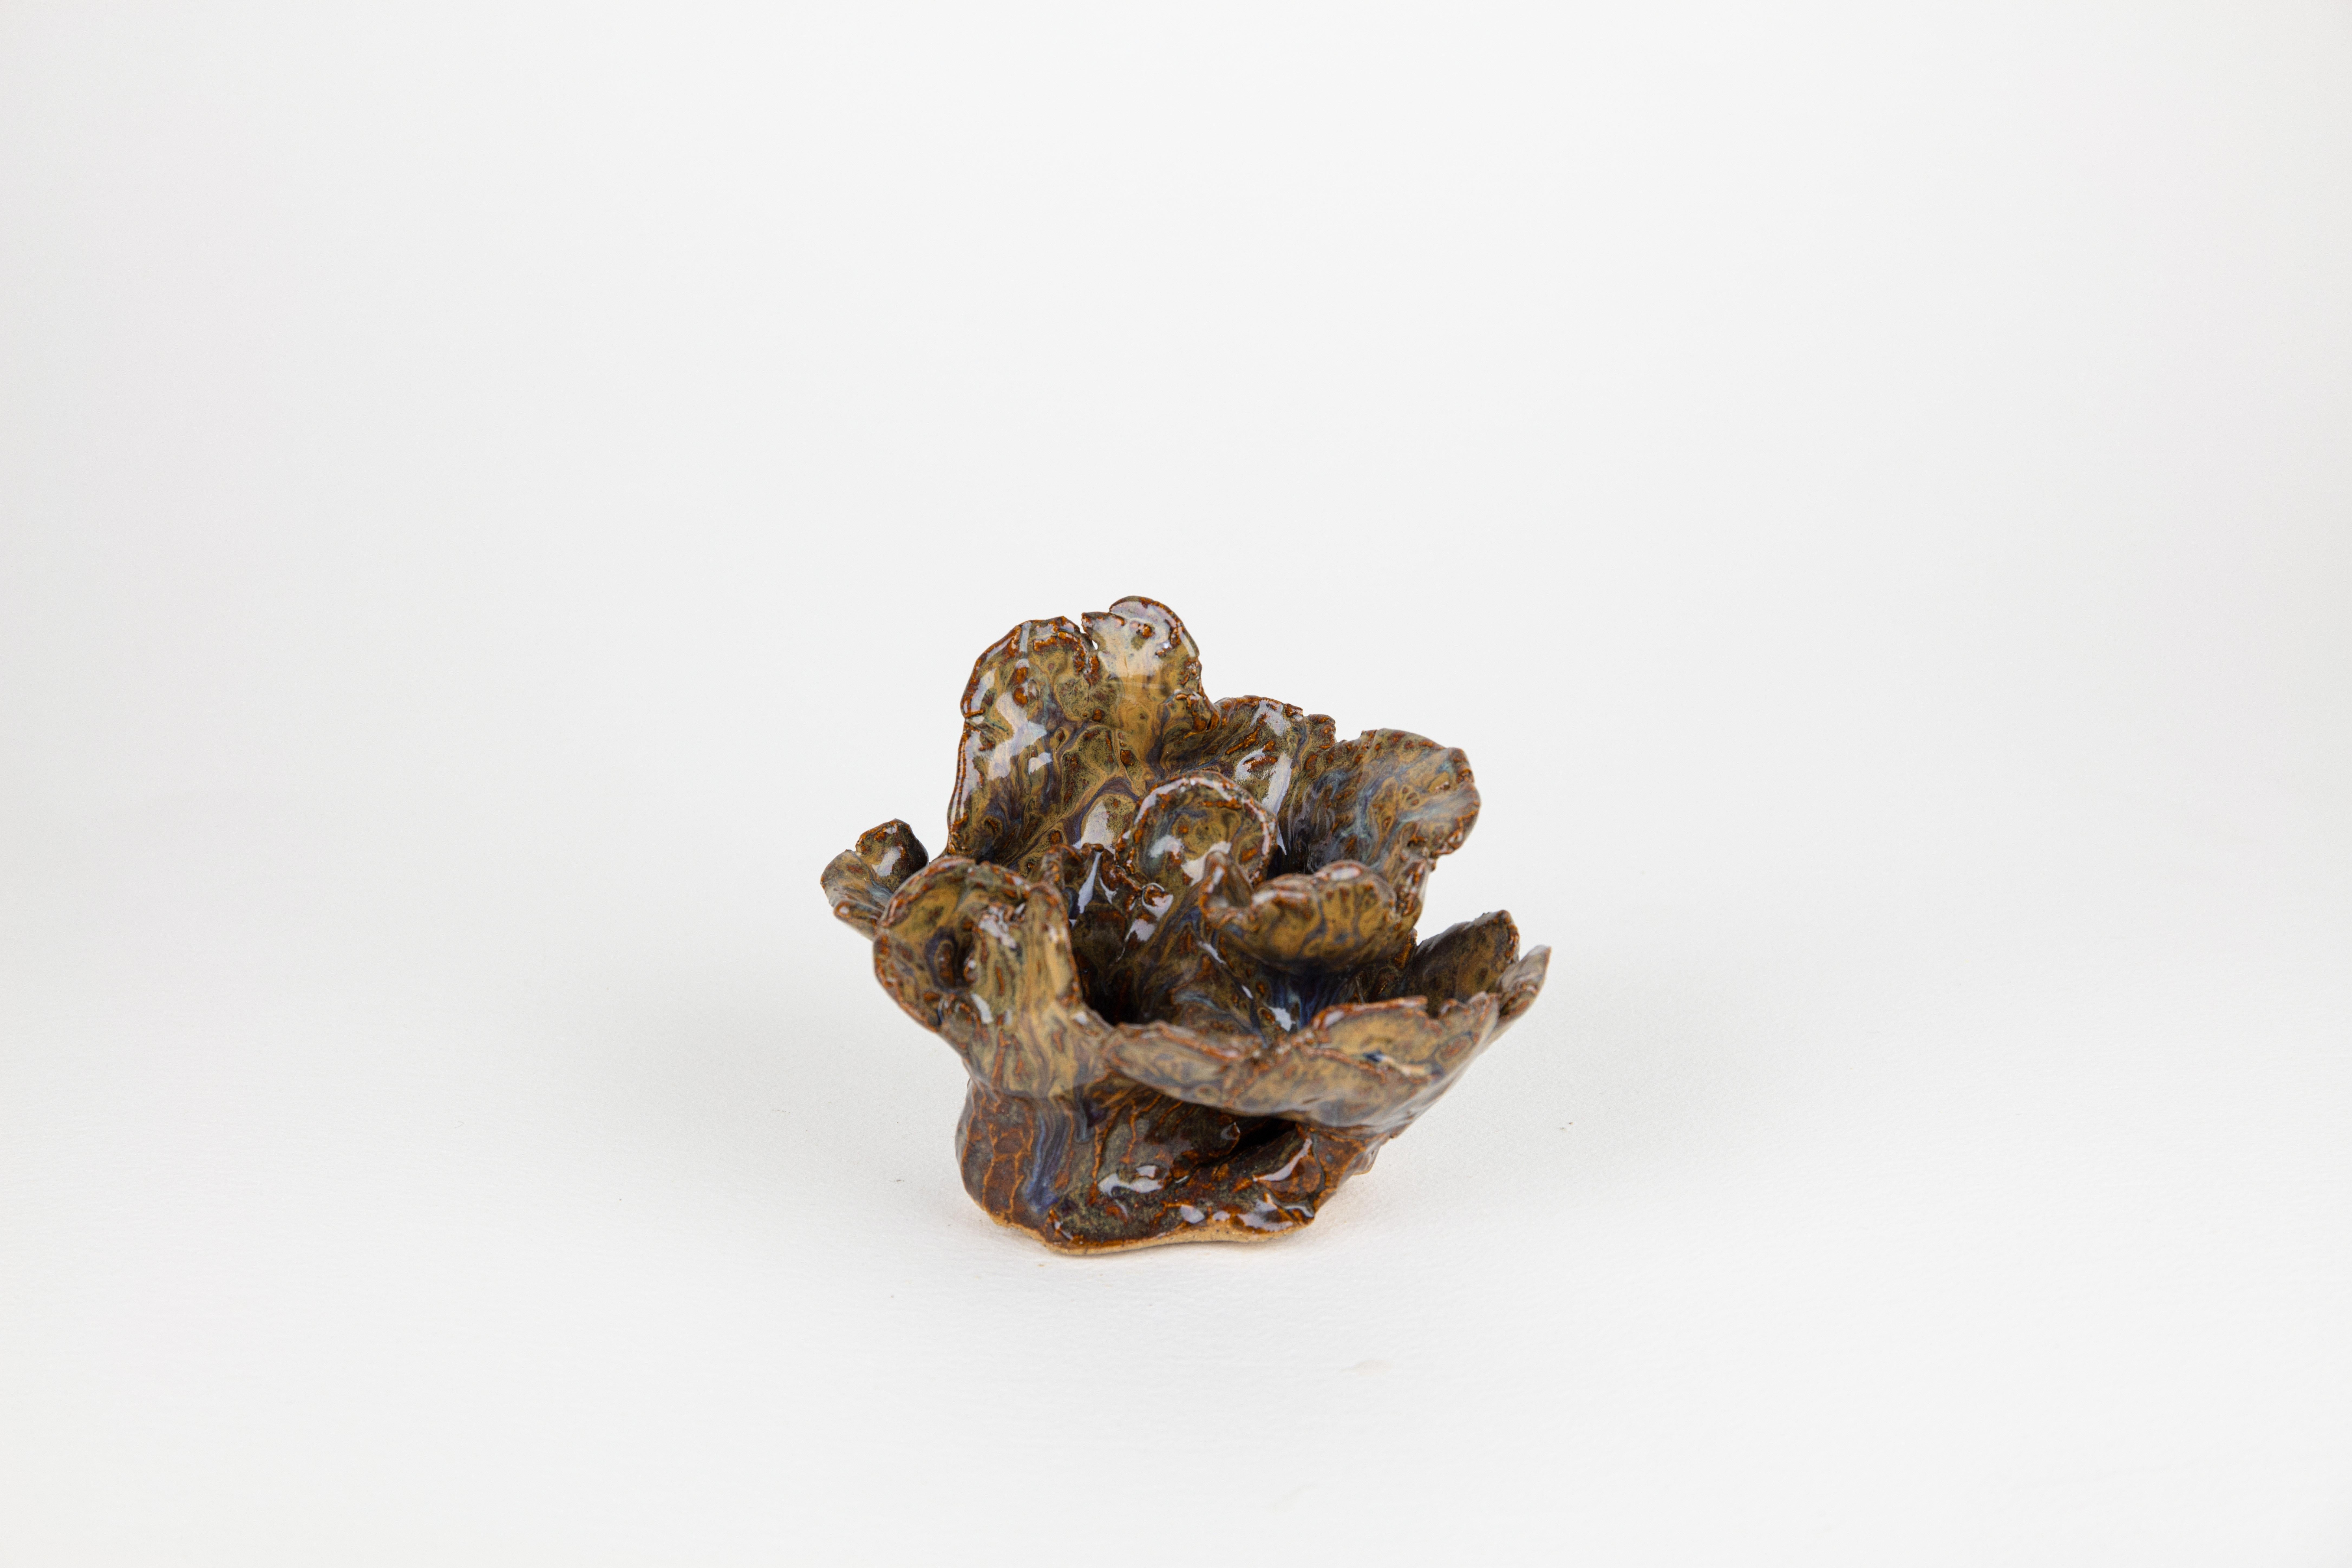 Lichen 2, Abstract ceramic sculpture, brown